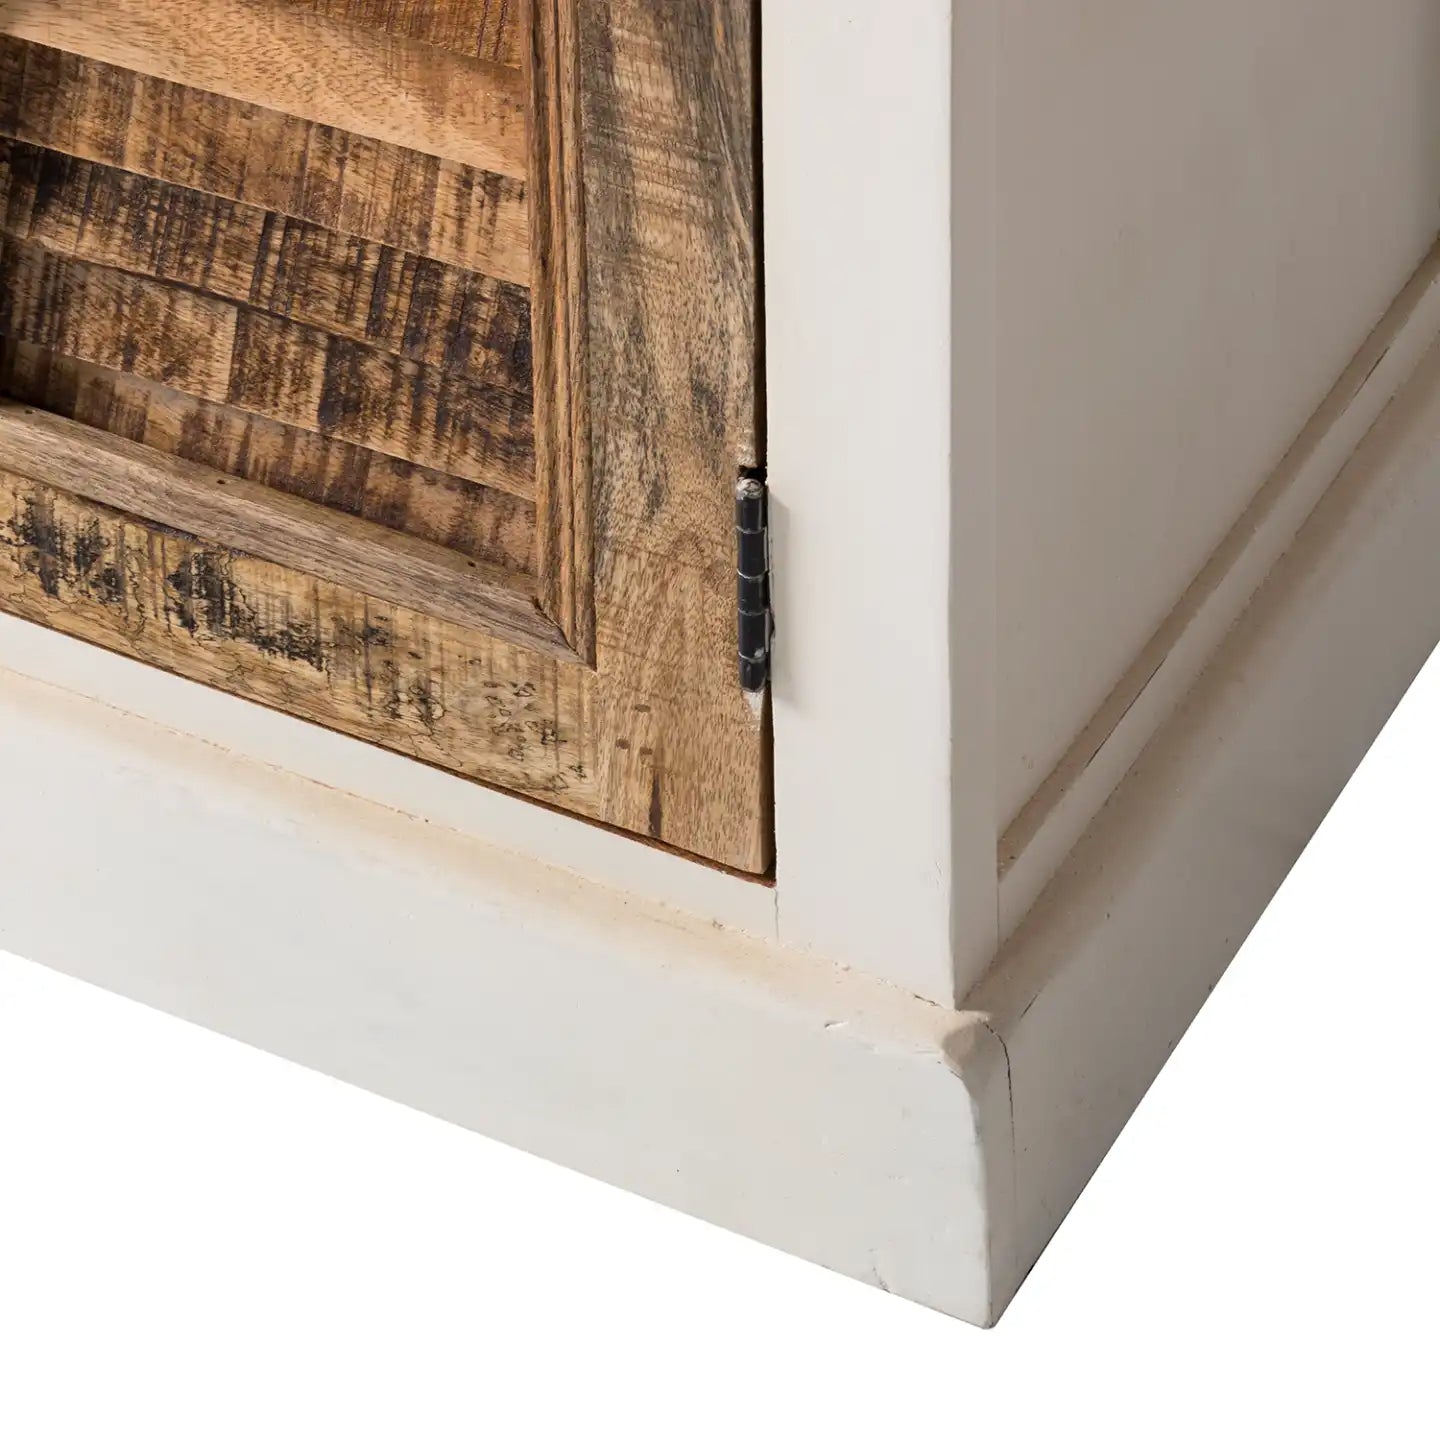 Alfie Wood Sideboard - 1 Drawer & 2 Doors